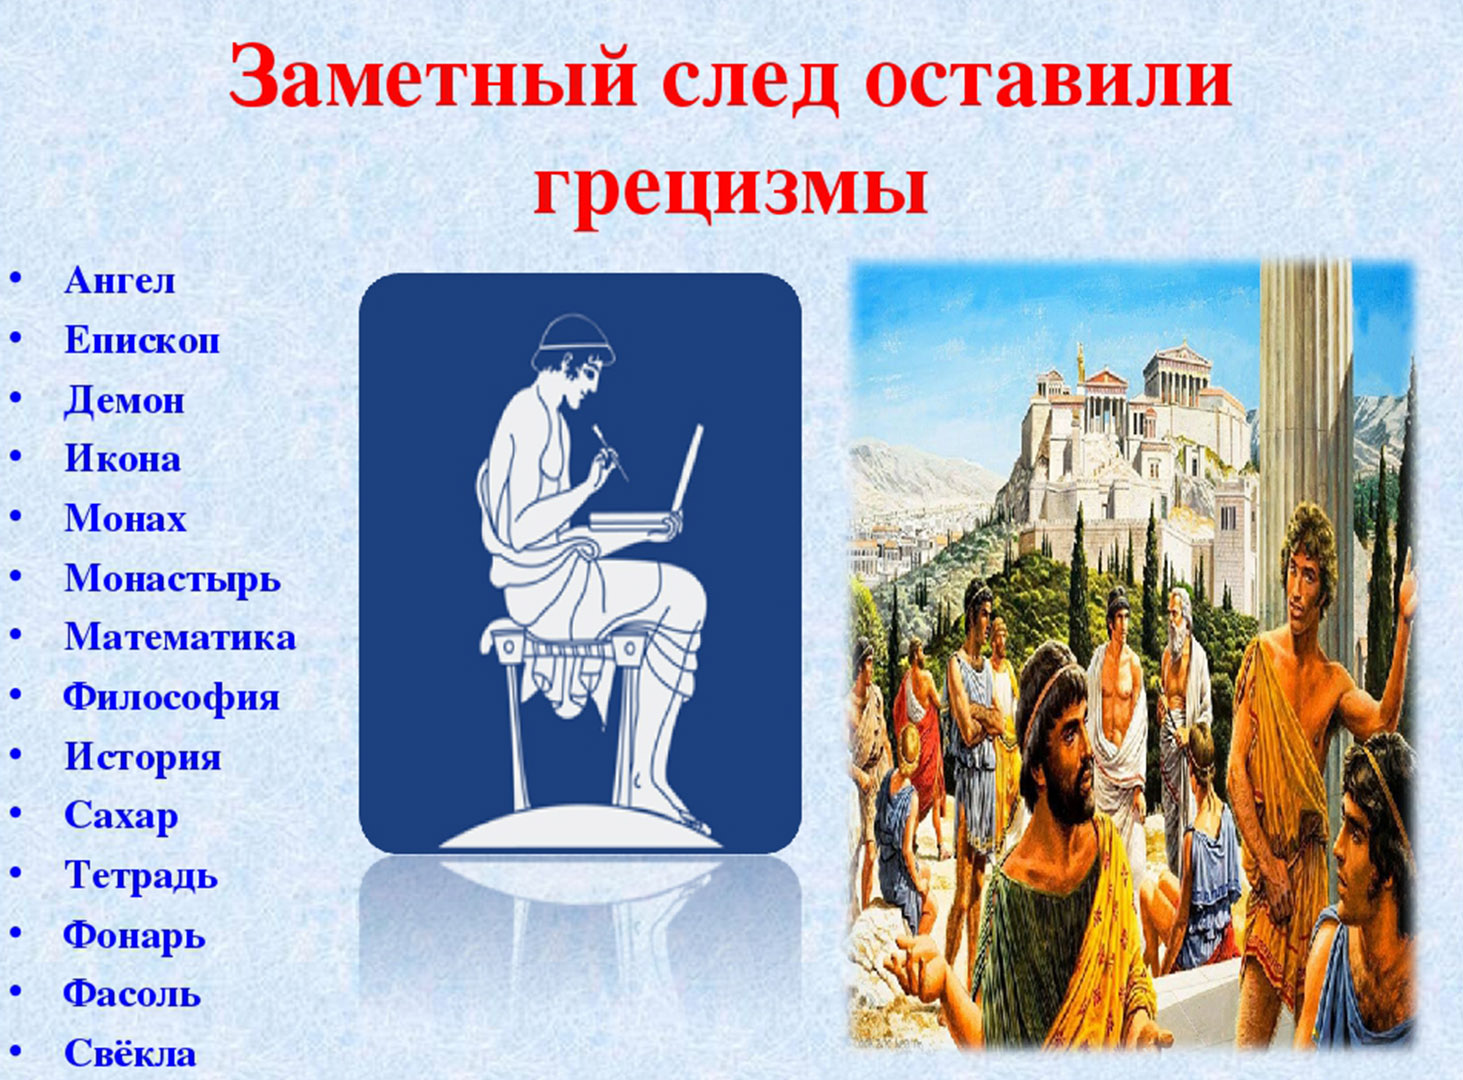 Приметы грецизмов в русском языке